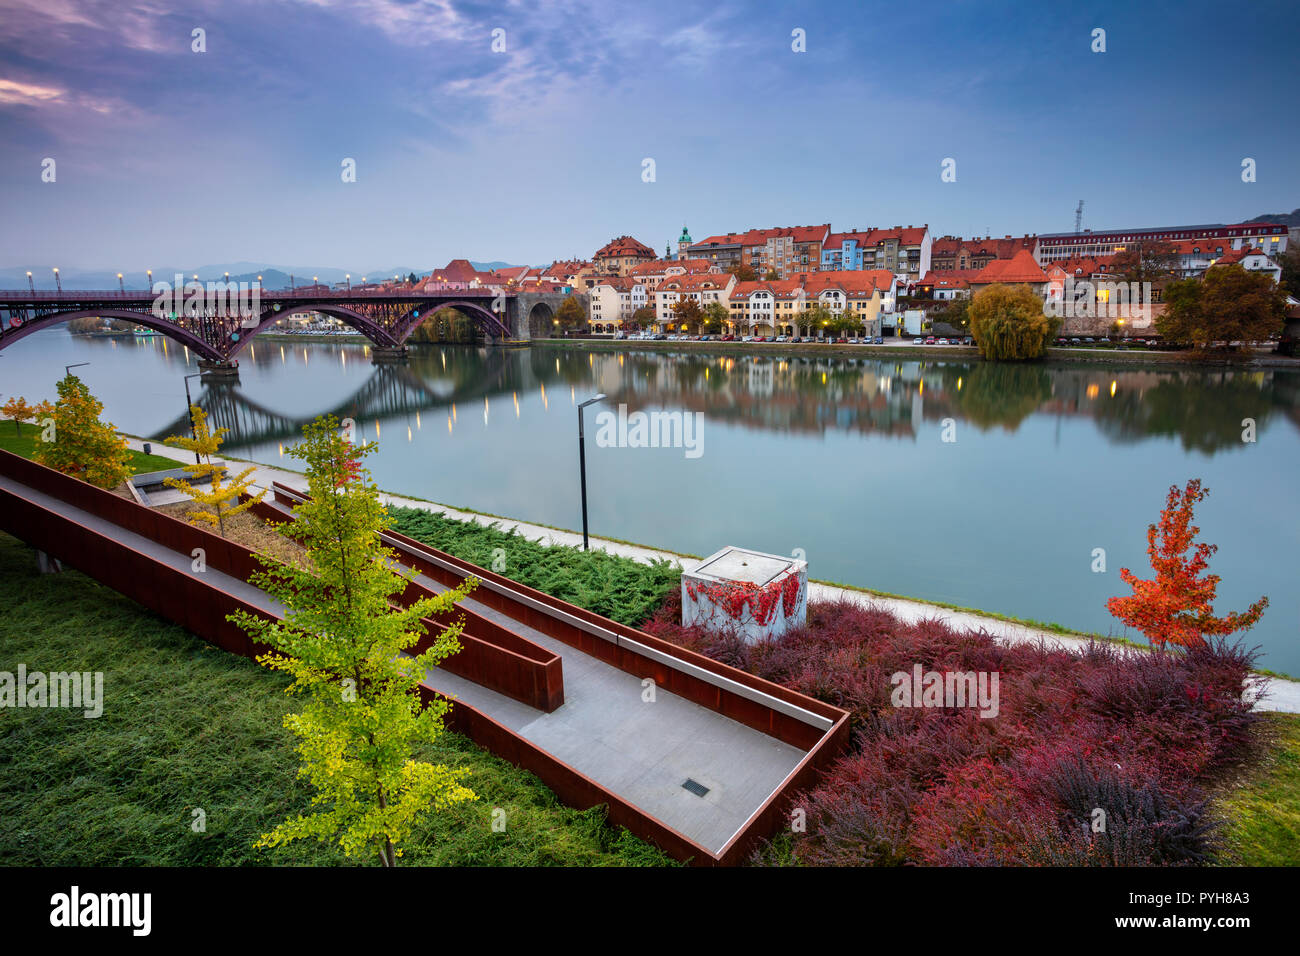 Maribor, Slowenien. Stadtbild Bild von Maribor, Slowenien im Herbst Dämmerung mit Reflexion der Stadt in der Drau. Hinweis für die Redaktion: Stockfoto